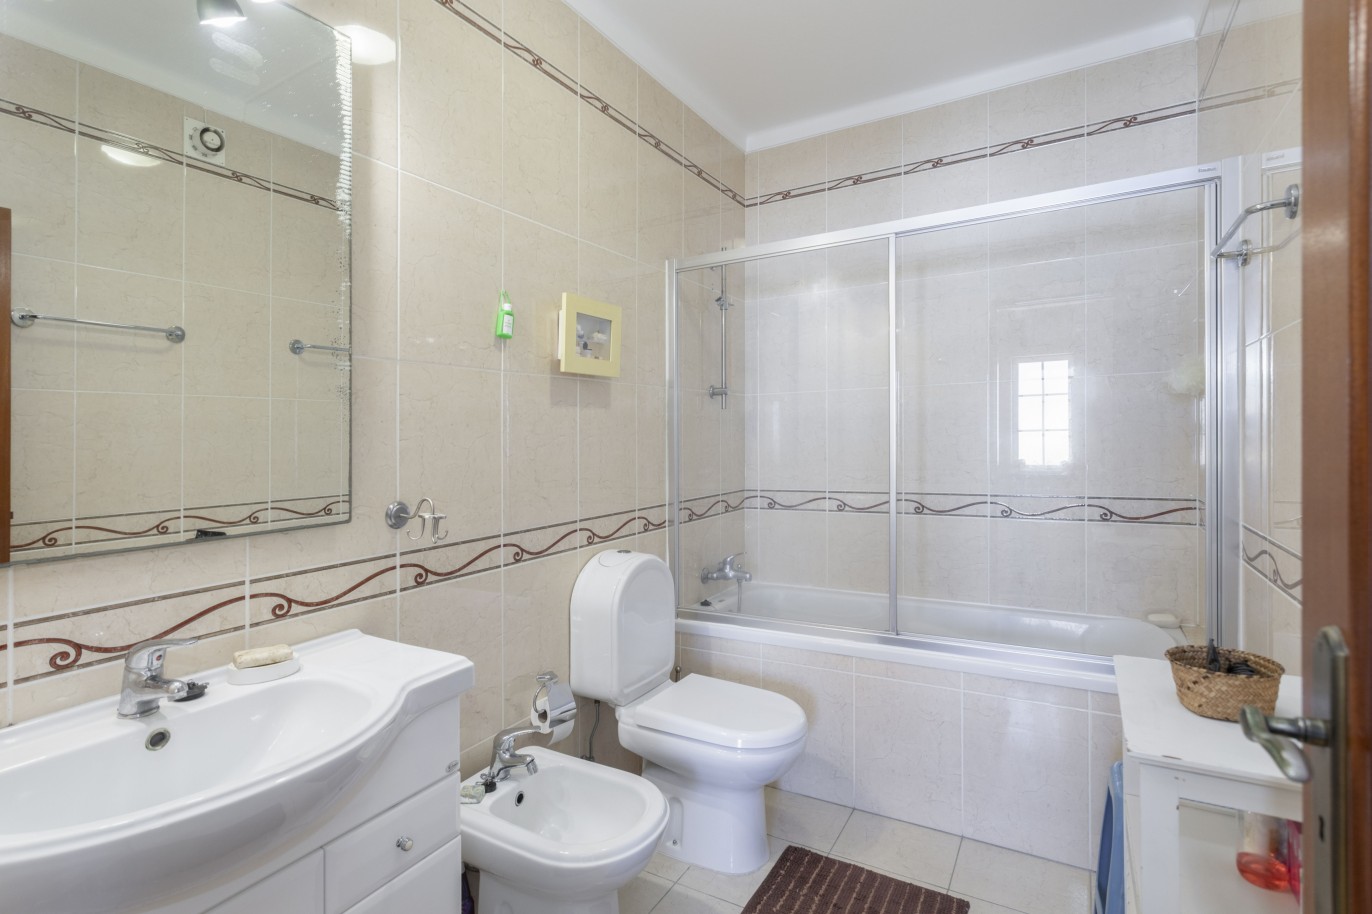 Villa de 3 dormitorios en venta en Porto de Mós, Algarve_233237